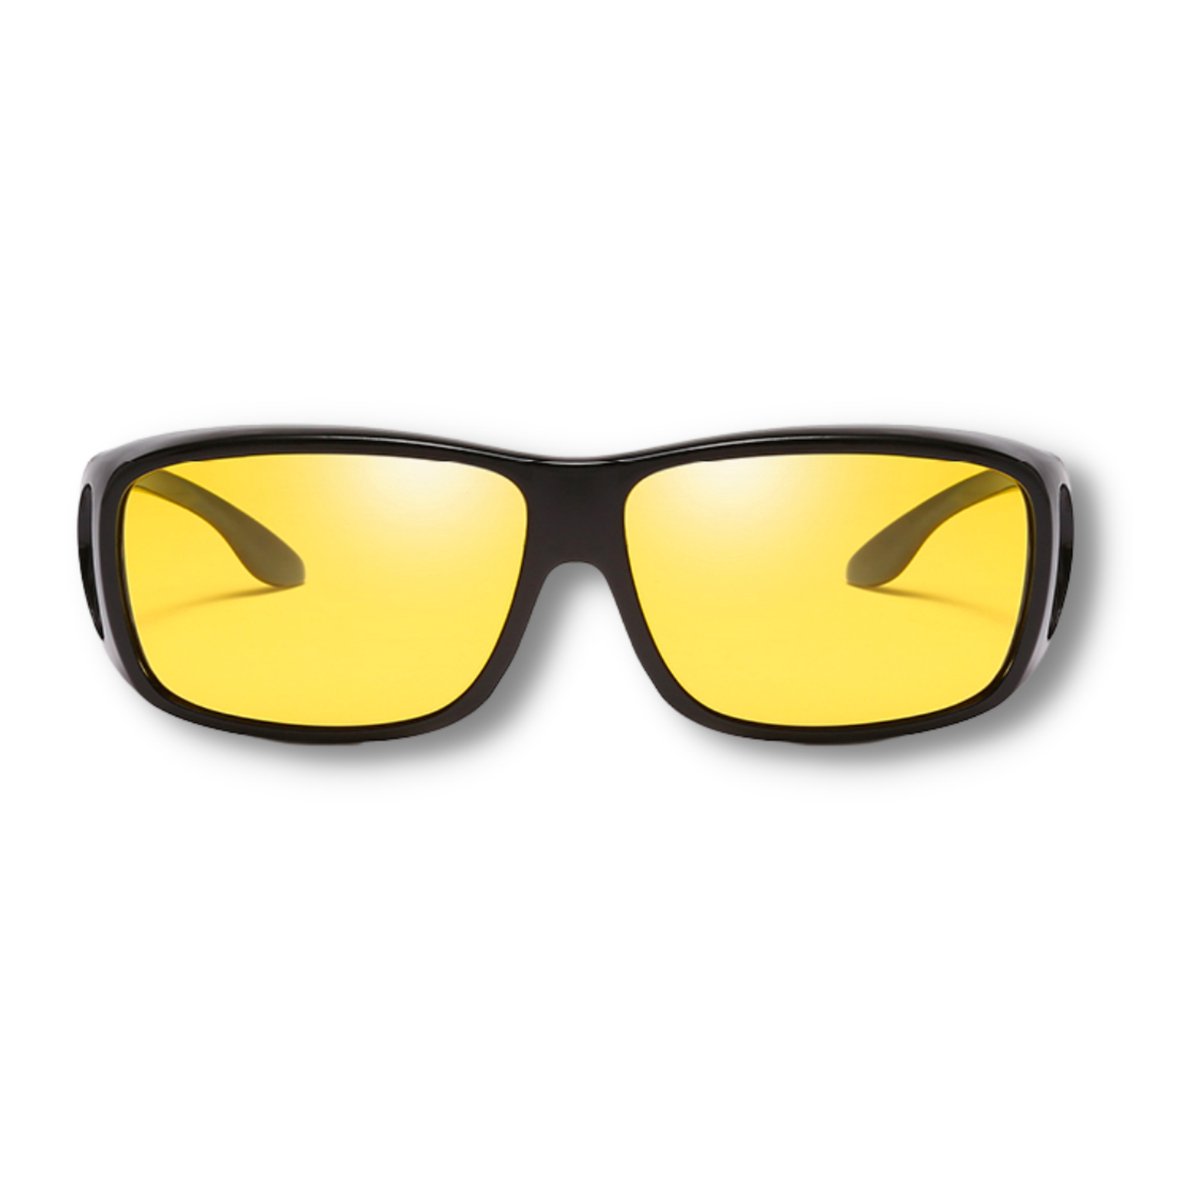 Nachtbril auto – Voor autorijden in het donker – Polaroid glazen – Gele bril  – Tegen... | bol.com